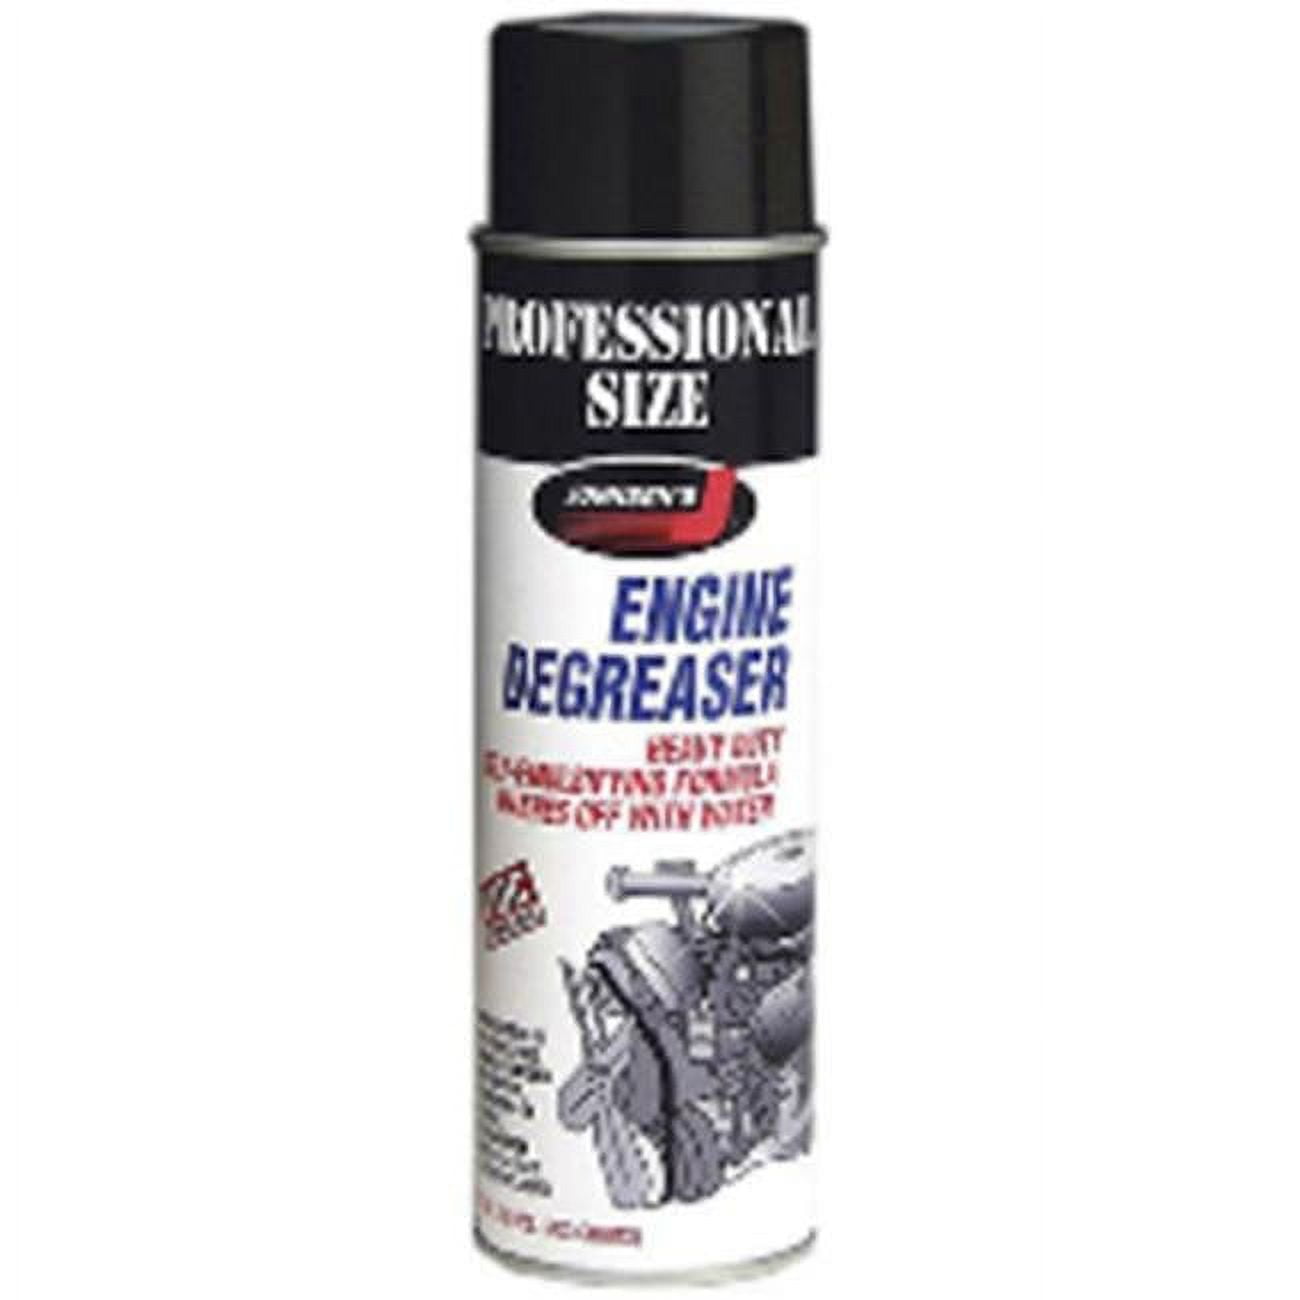 JEGS 72328: 32 oz. Spray Bottle of Engine Degreaser